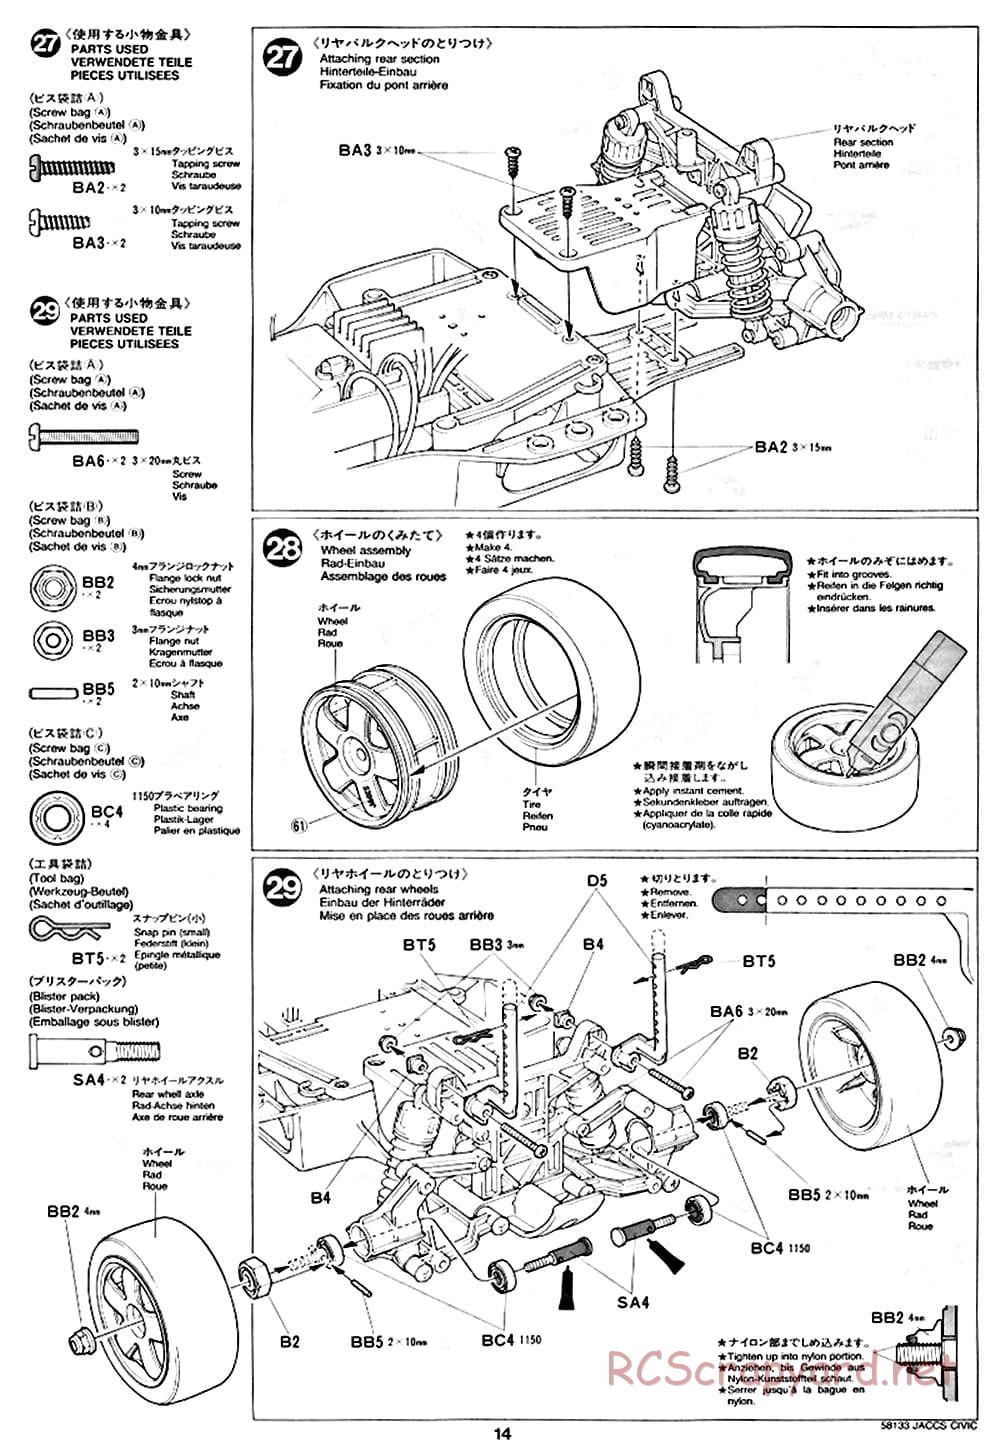 Tamiya - JACCS Honda Civic - FF-01 Chassis - Manual - Page 14